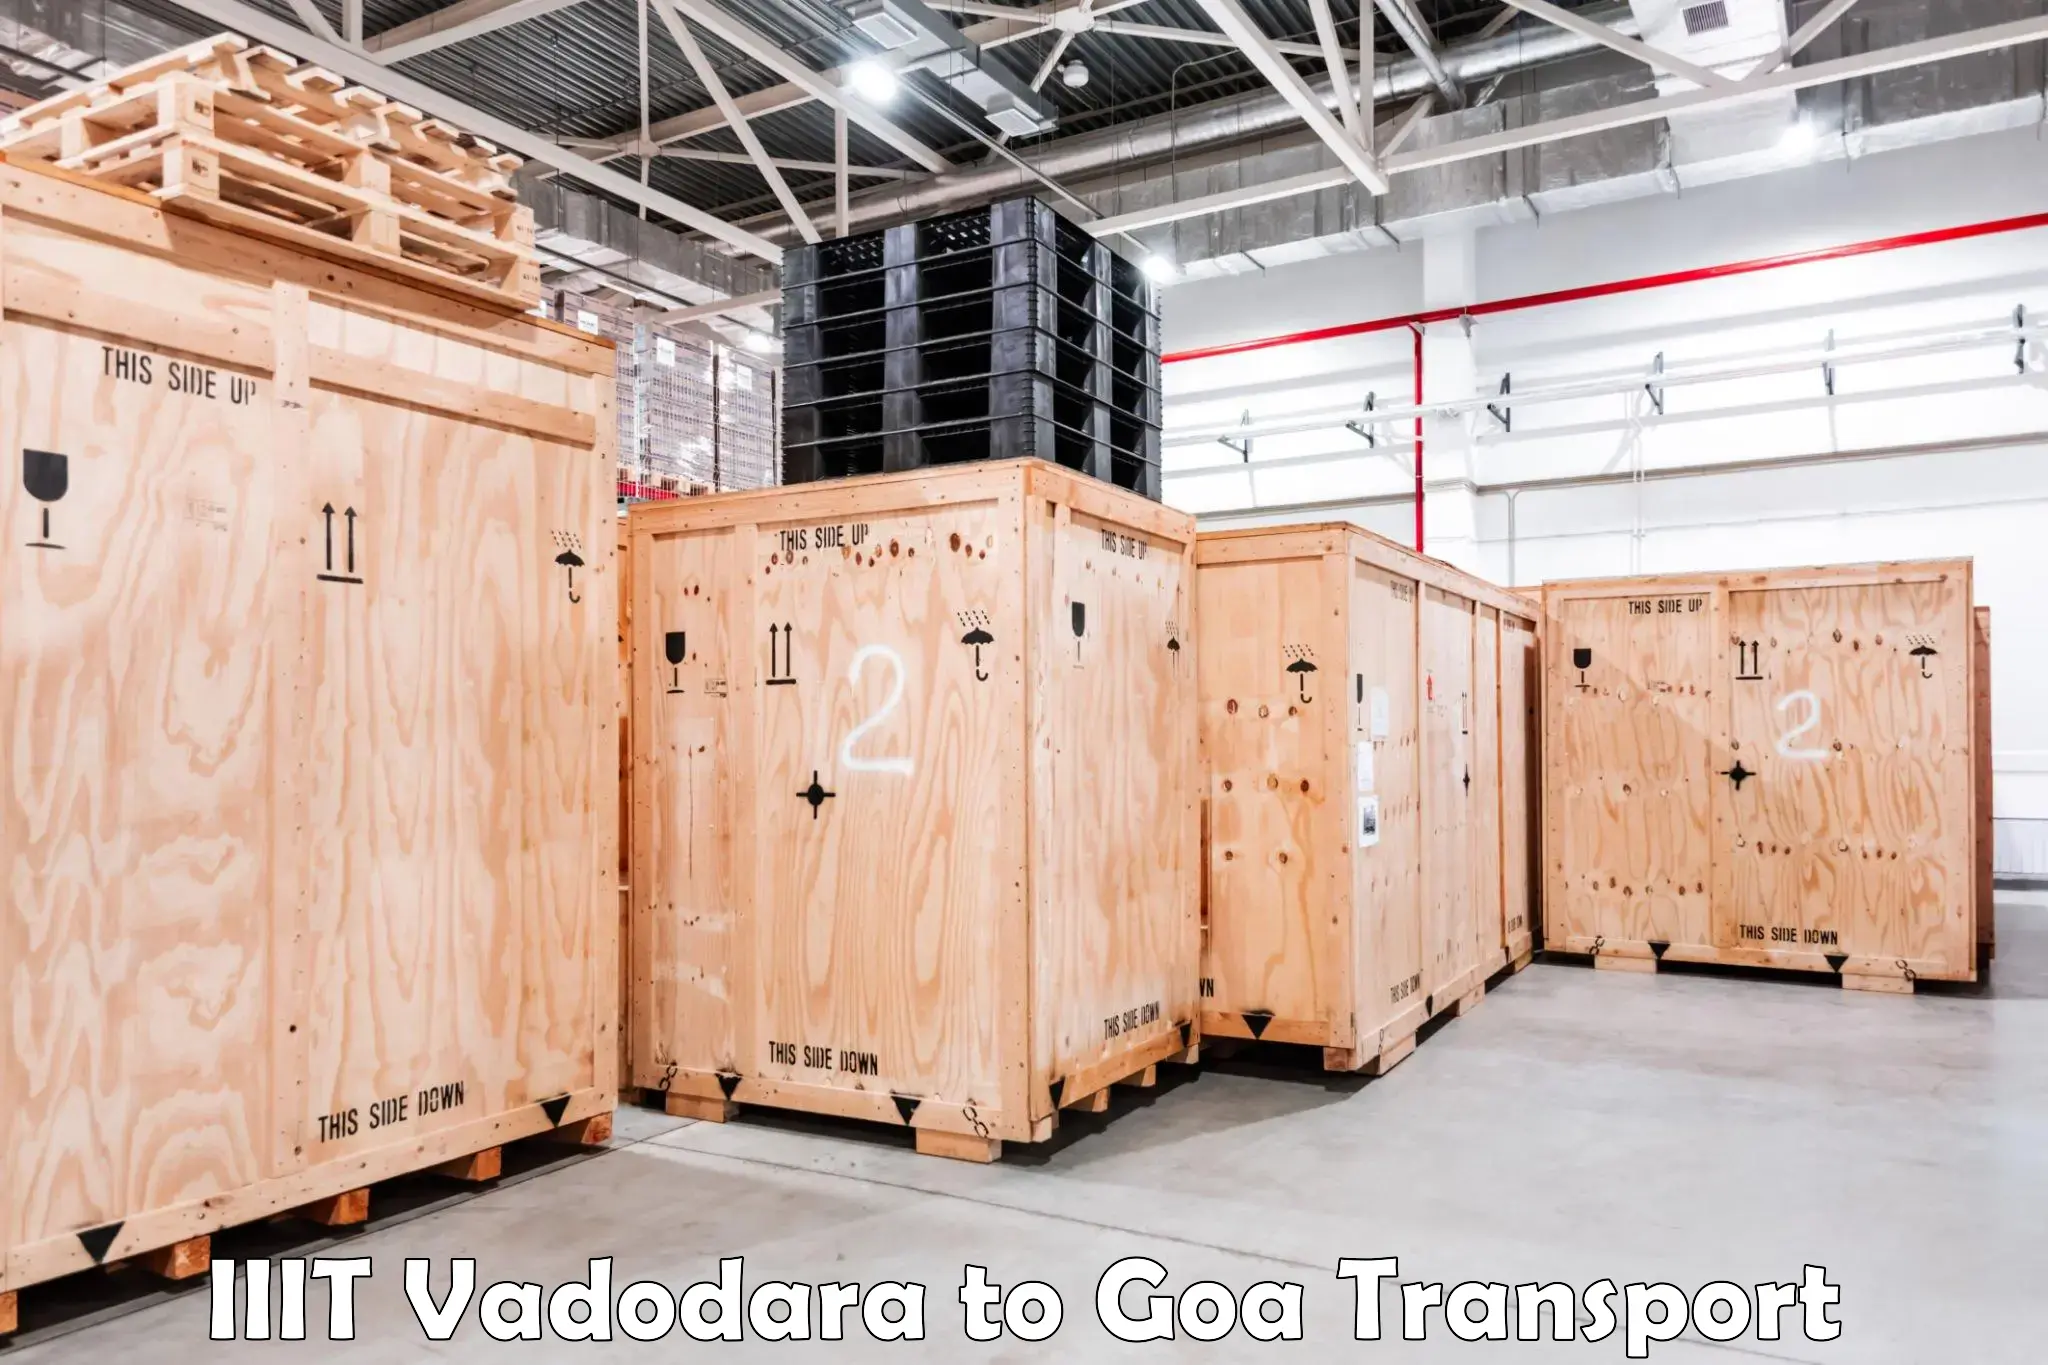 Bike transport service IIIT Vadodara to Goa